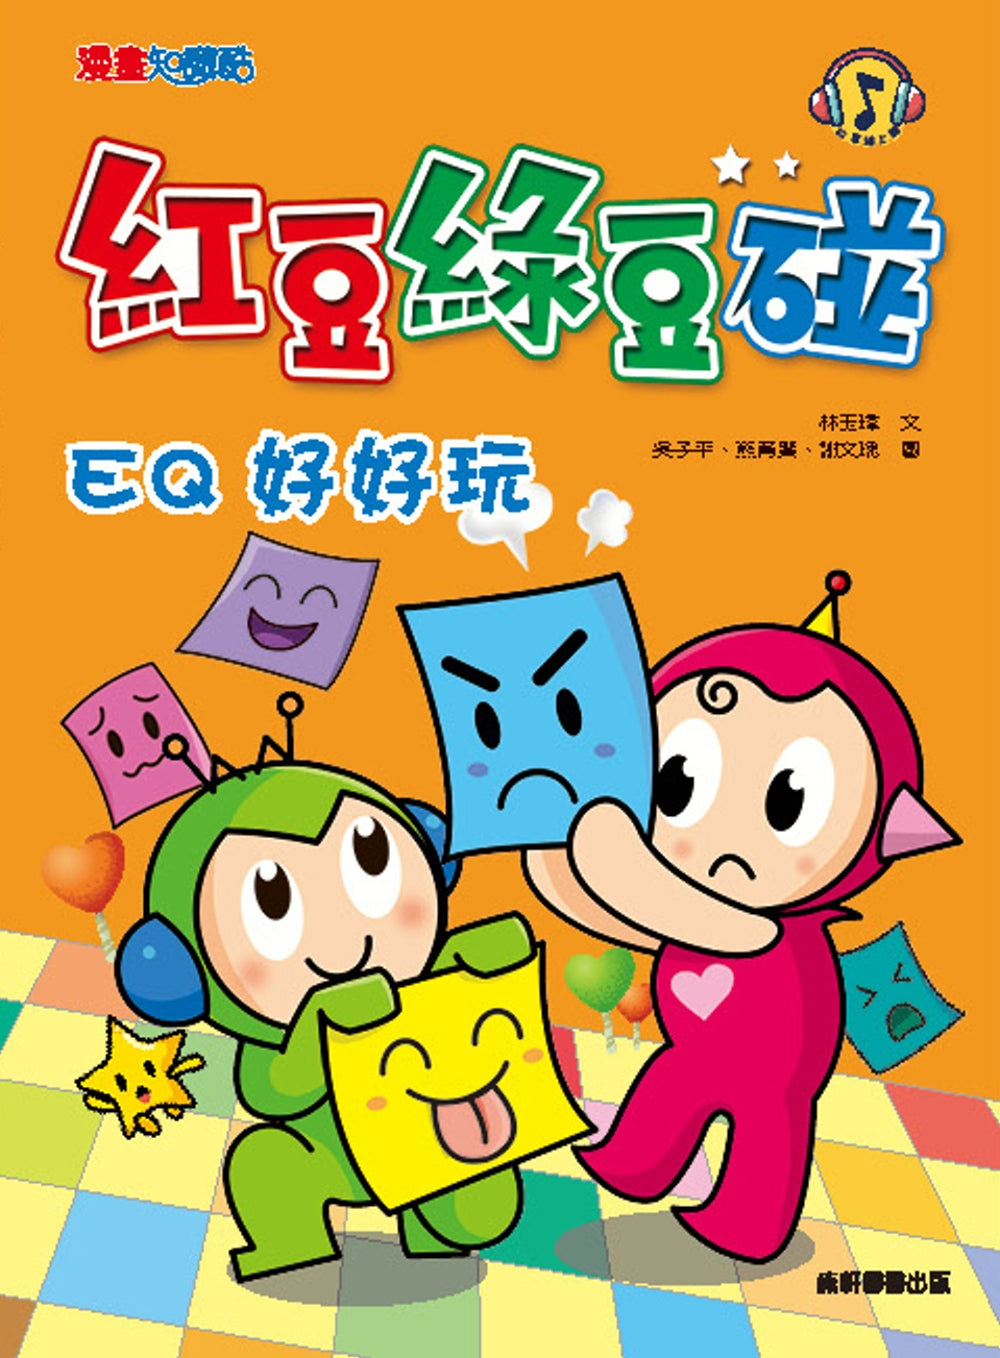 Red Bean Green Bean Manga #3: EQ is Fun • 紅豆綠豆碰 #3：EQ好好玩